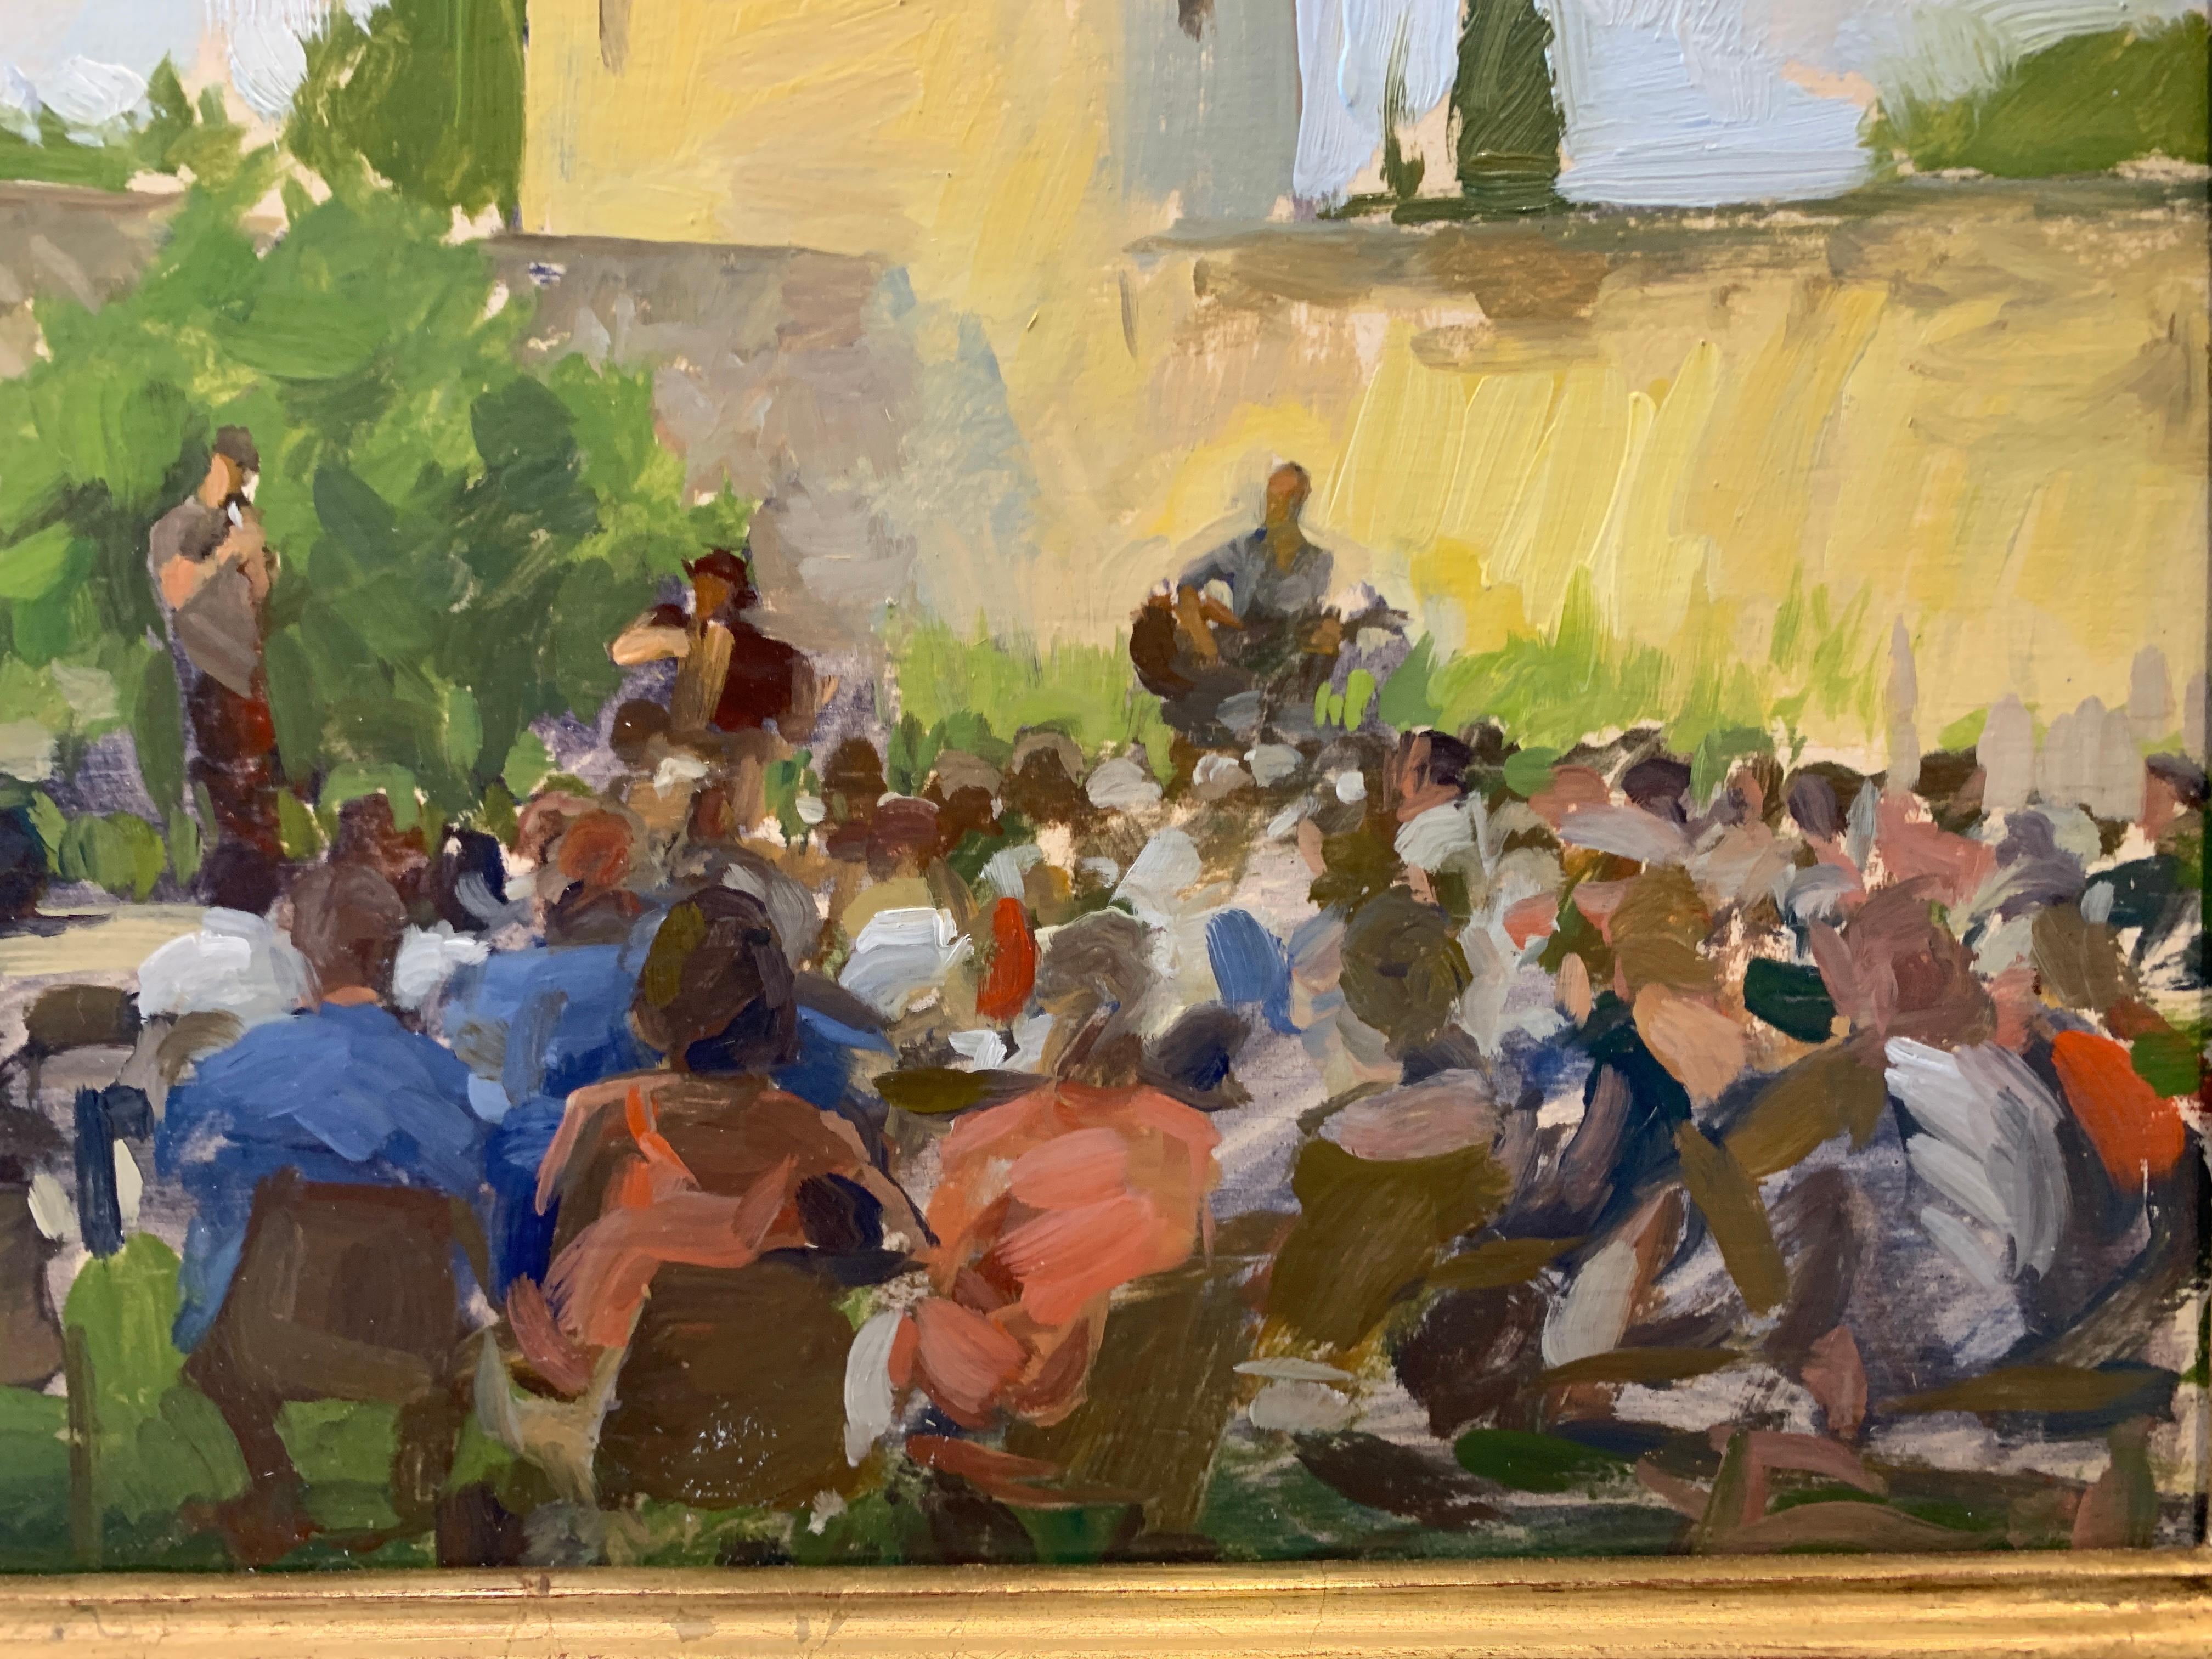 Ein Ölgemälde, gemalt en plein air von einer Live-Konzertaufführung. Man sieht Musiker auf der Bühne, die vor einem großen Publikum verschiedene Instrumente spielen. Im Hintergrund sind eine Mauer und ein turmartiges Bauwerk zu sehen. Das Gemälde